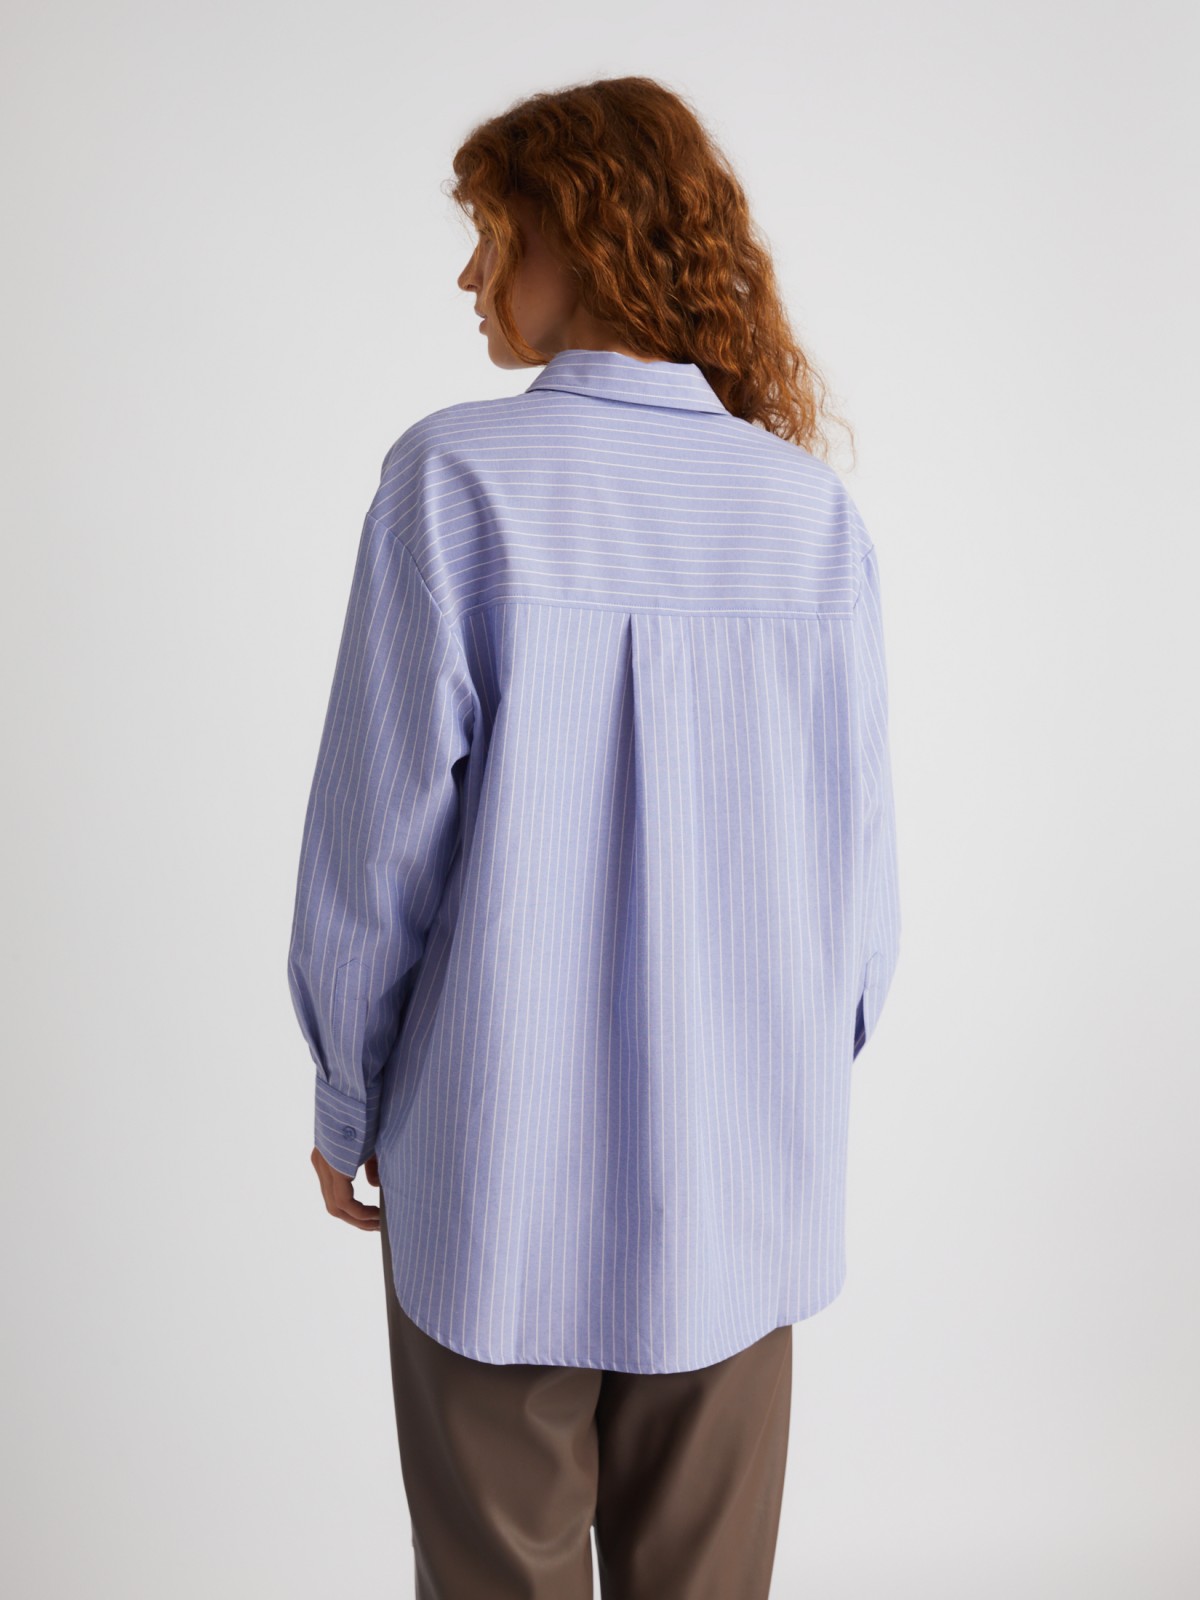 Офисная рубашка оверсайз силуэта в полоску с декоративной брошью zolla 023331162073, цвет светло-голубой, размер XS - фото 5